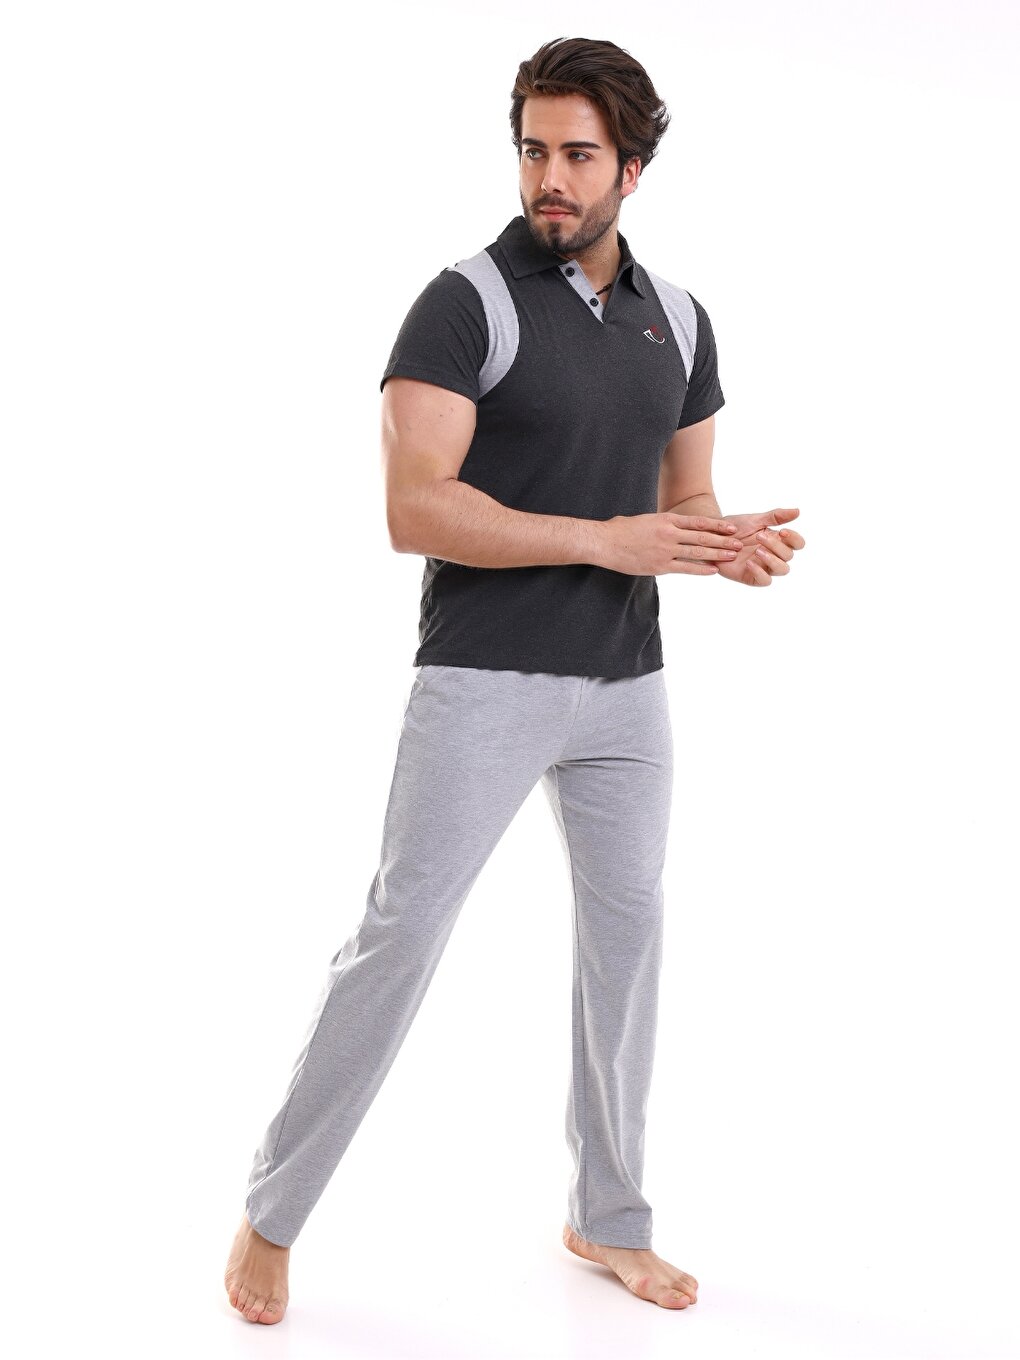 Мужской пижамный комплект стандартной формы PLATINUM GÜNEŞ, серый меланж мужская пижамная нижняя часть стандартной формы güneş черный